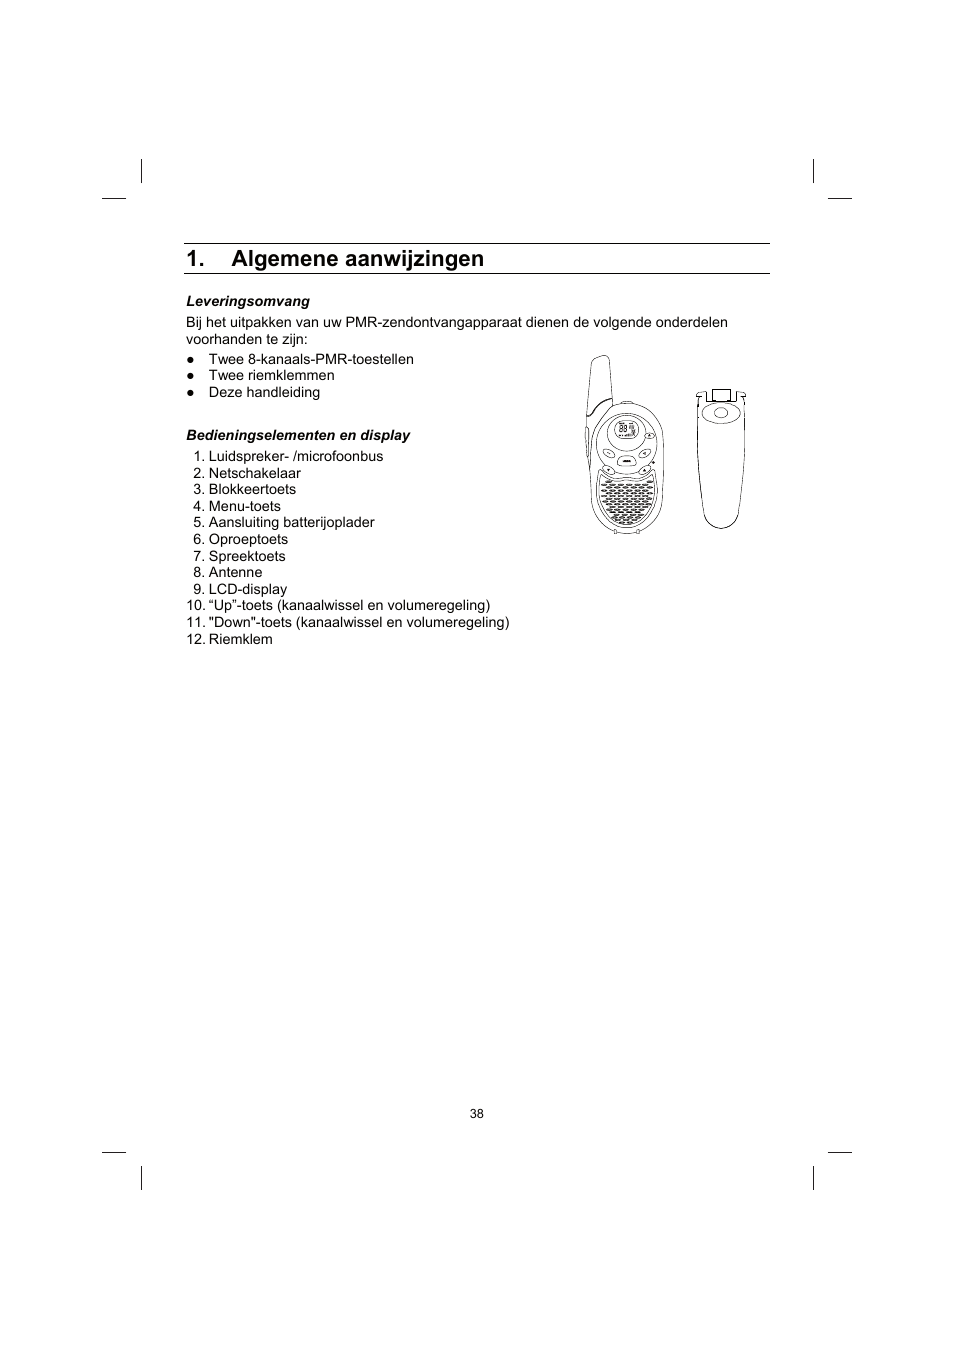 Algemene aanwijzingen | Brennenstuhl PMR Walkie Talkie TRX 3000 User Manual  | Page 38 / 92 | Original mode